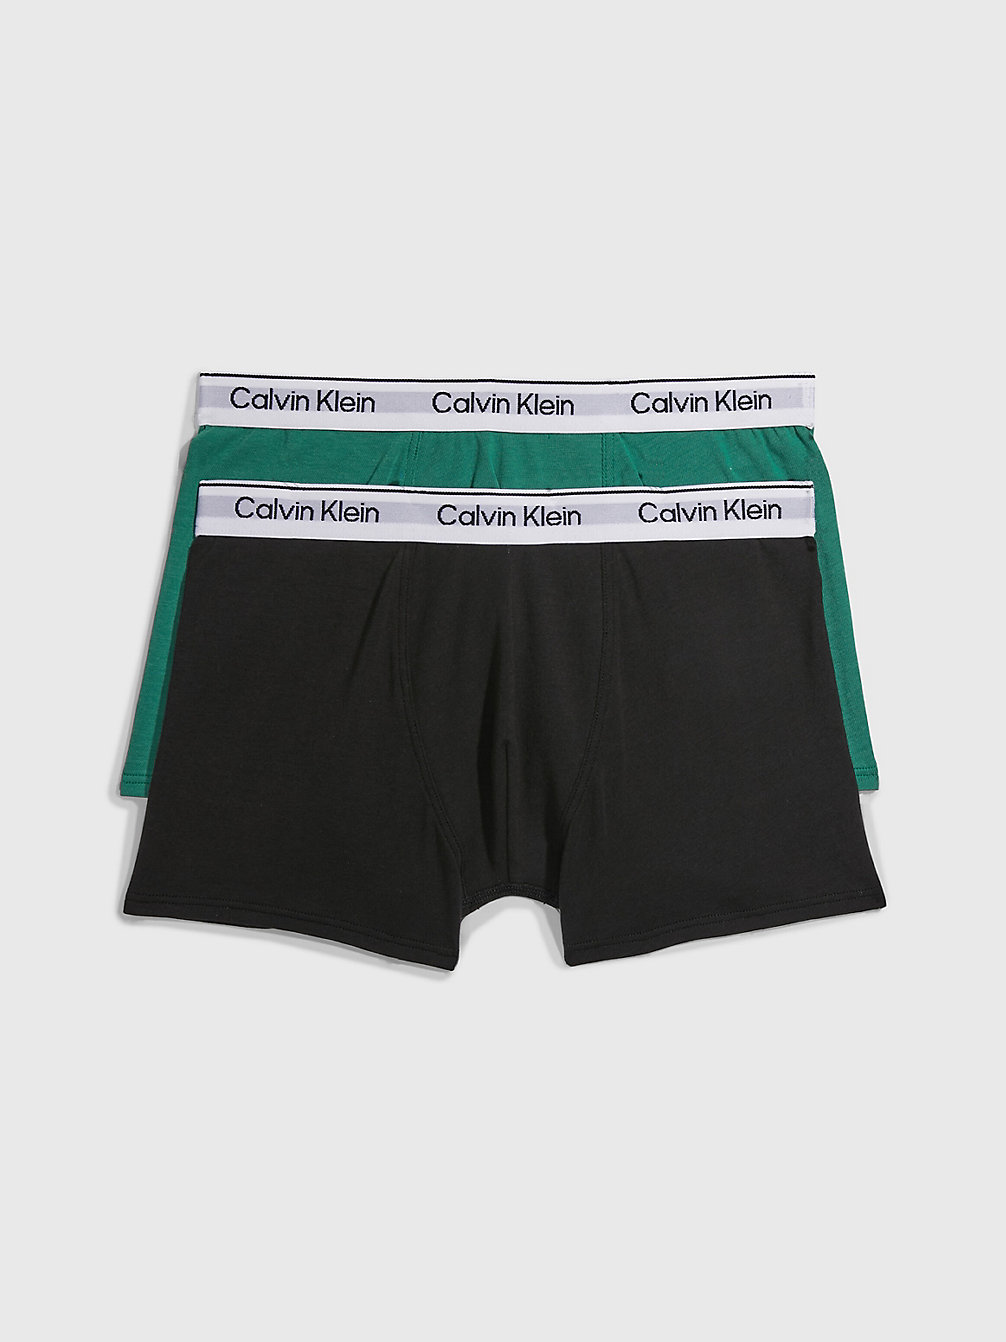 FOLIAGEGREEN/PVHBLACK > 2-Pack Jongensbroeken - Modern Cotton > undefined boys - Calvin Klein